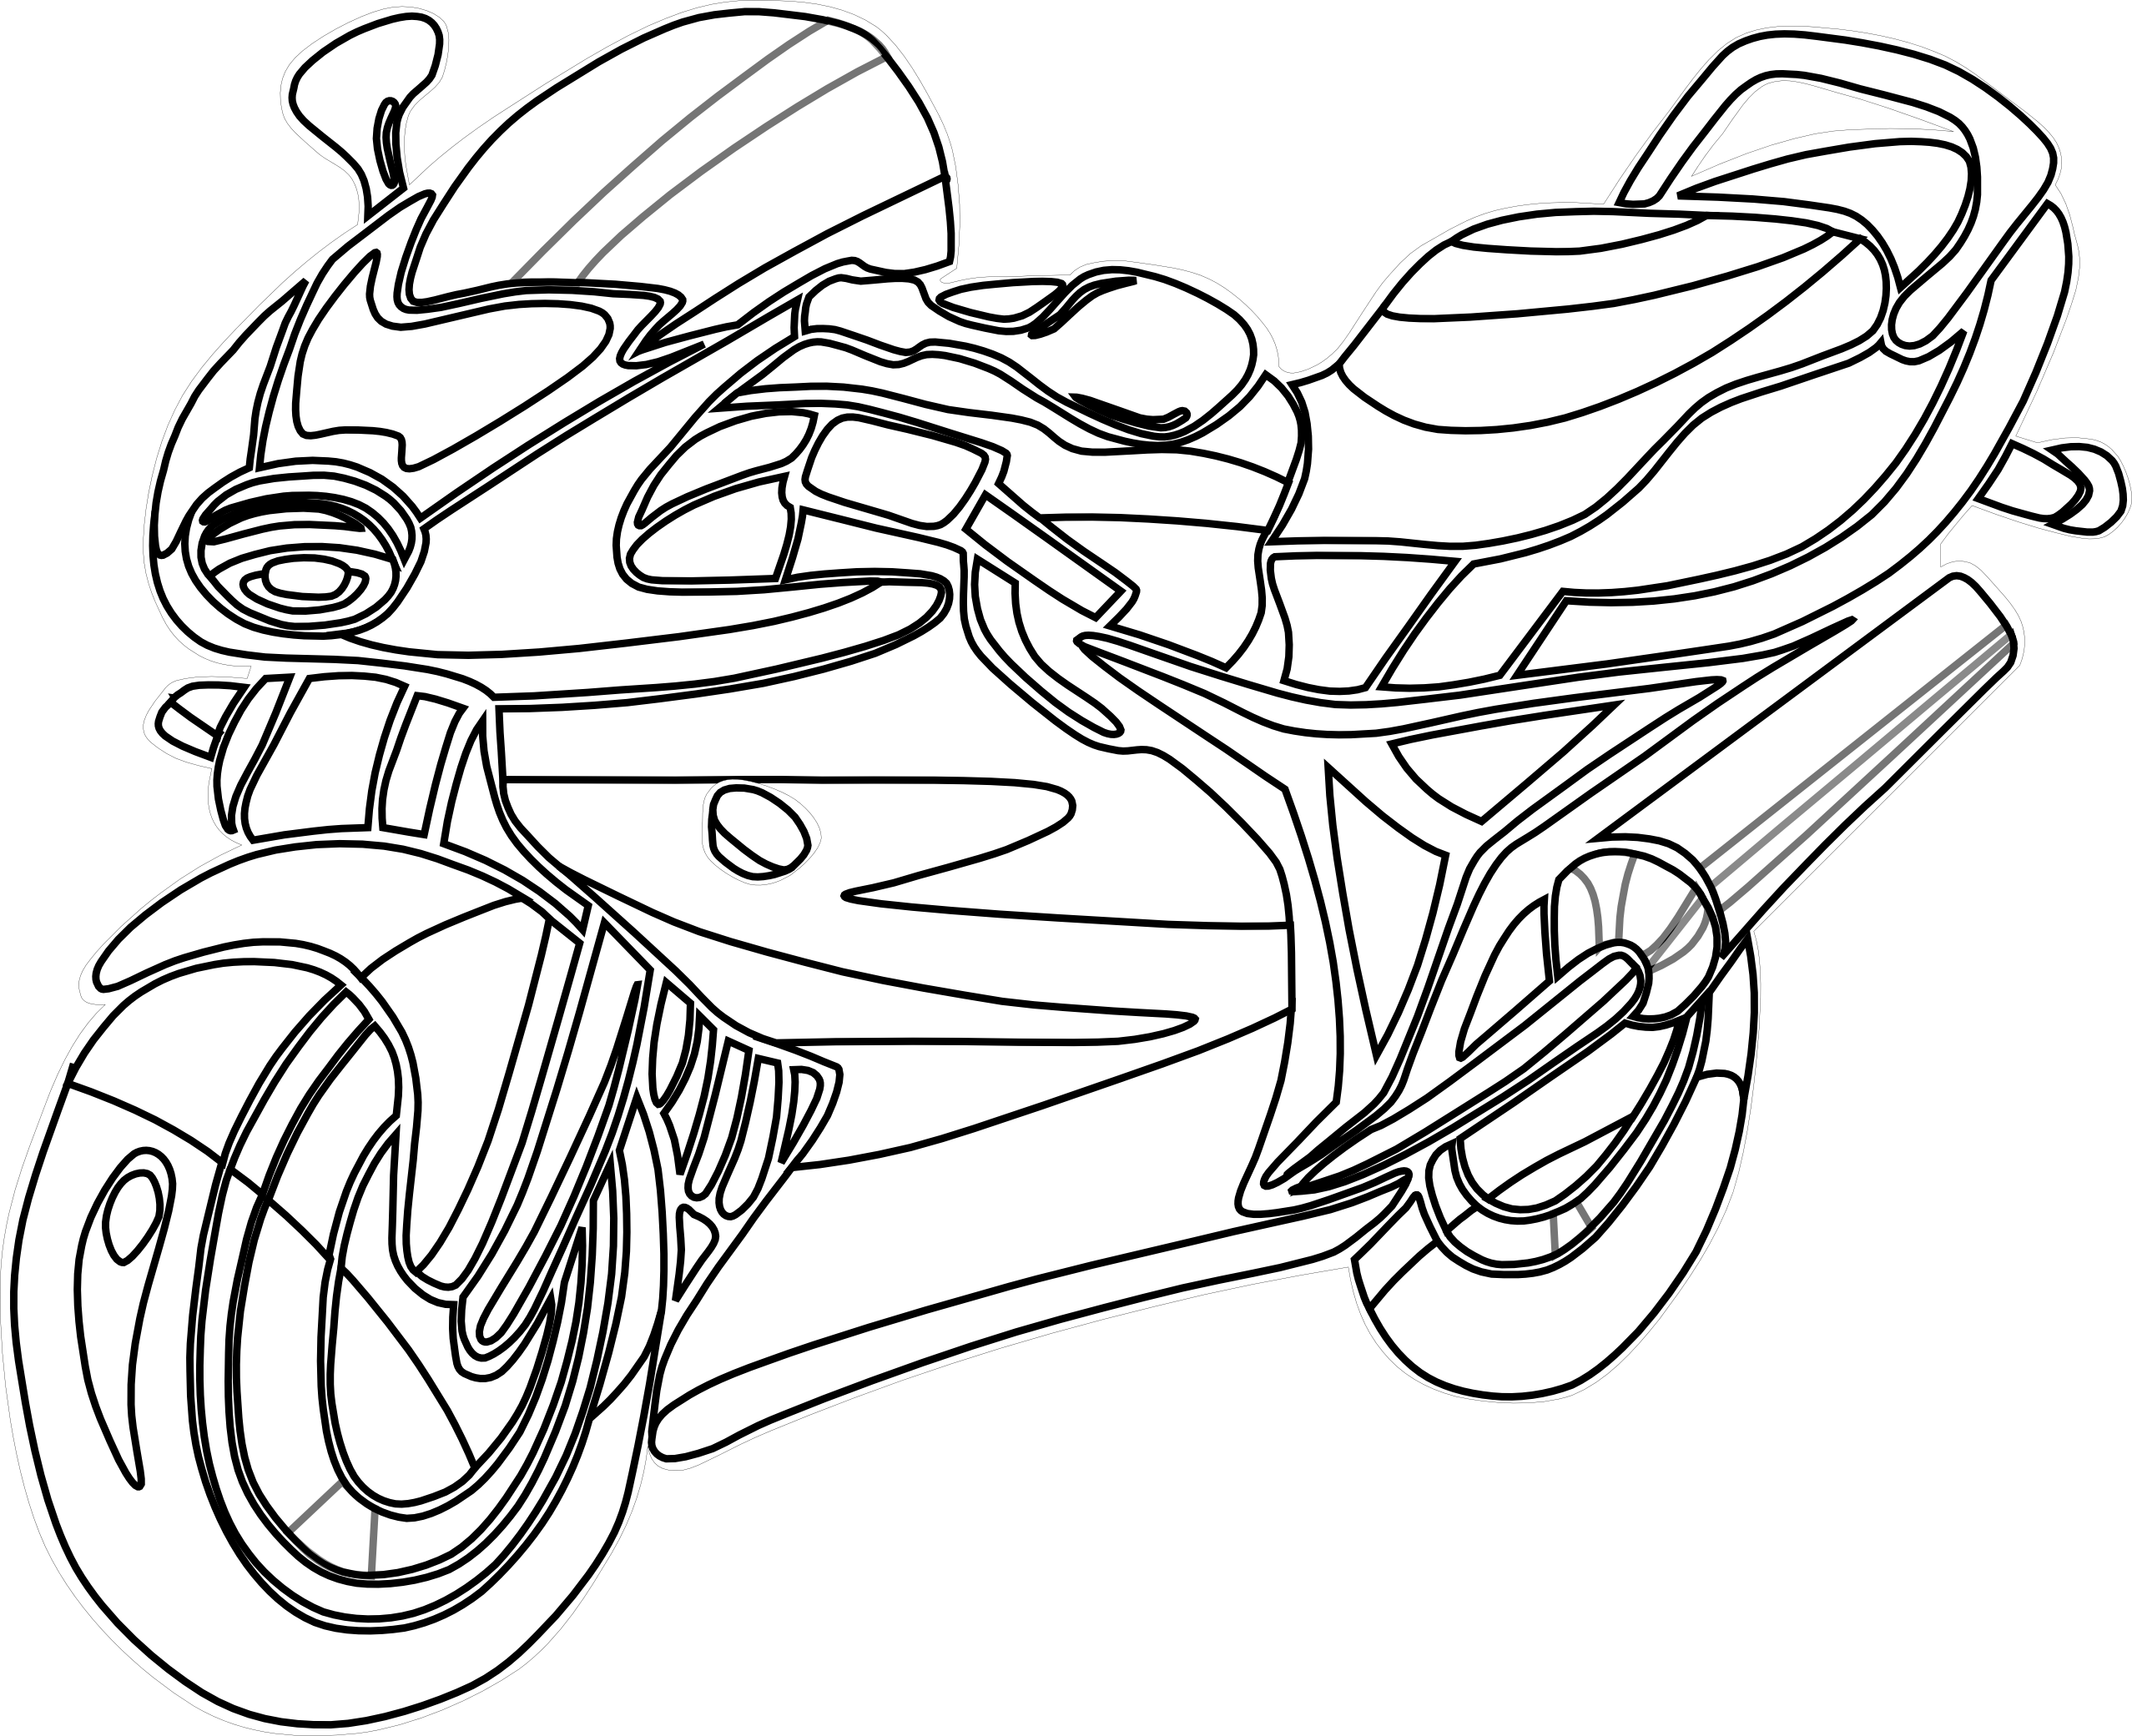 Motorcycle Vector Art - ClipArt Best